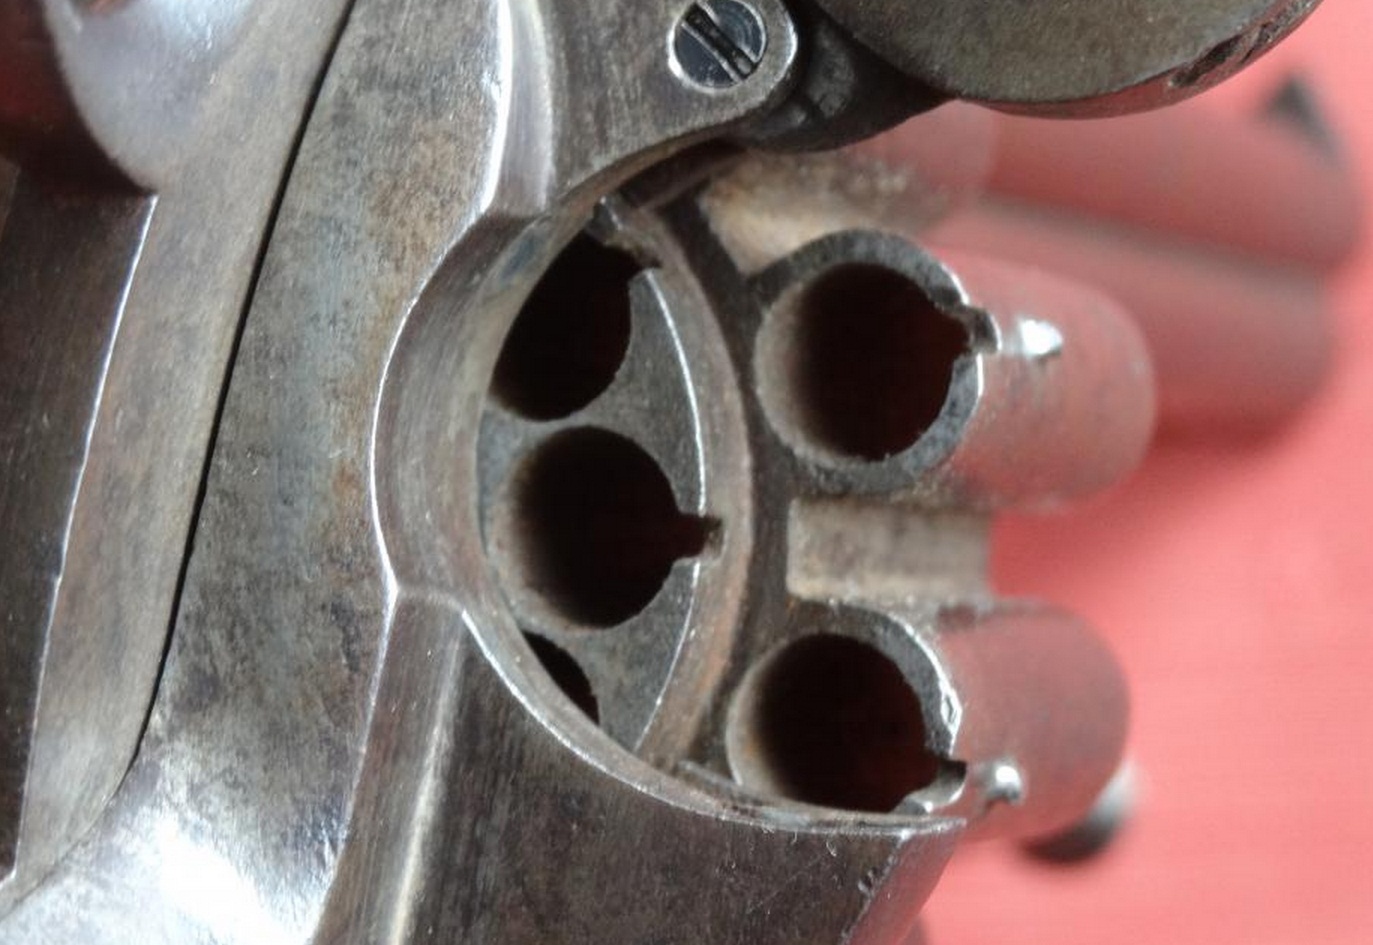 Two Barrel 20-shot Pinfire Revolver